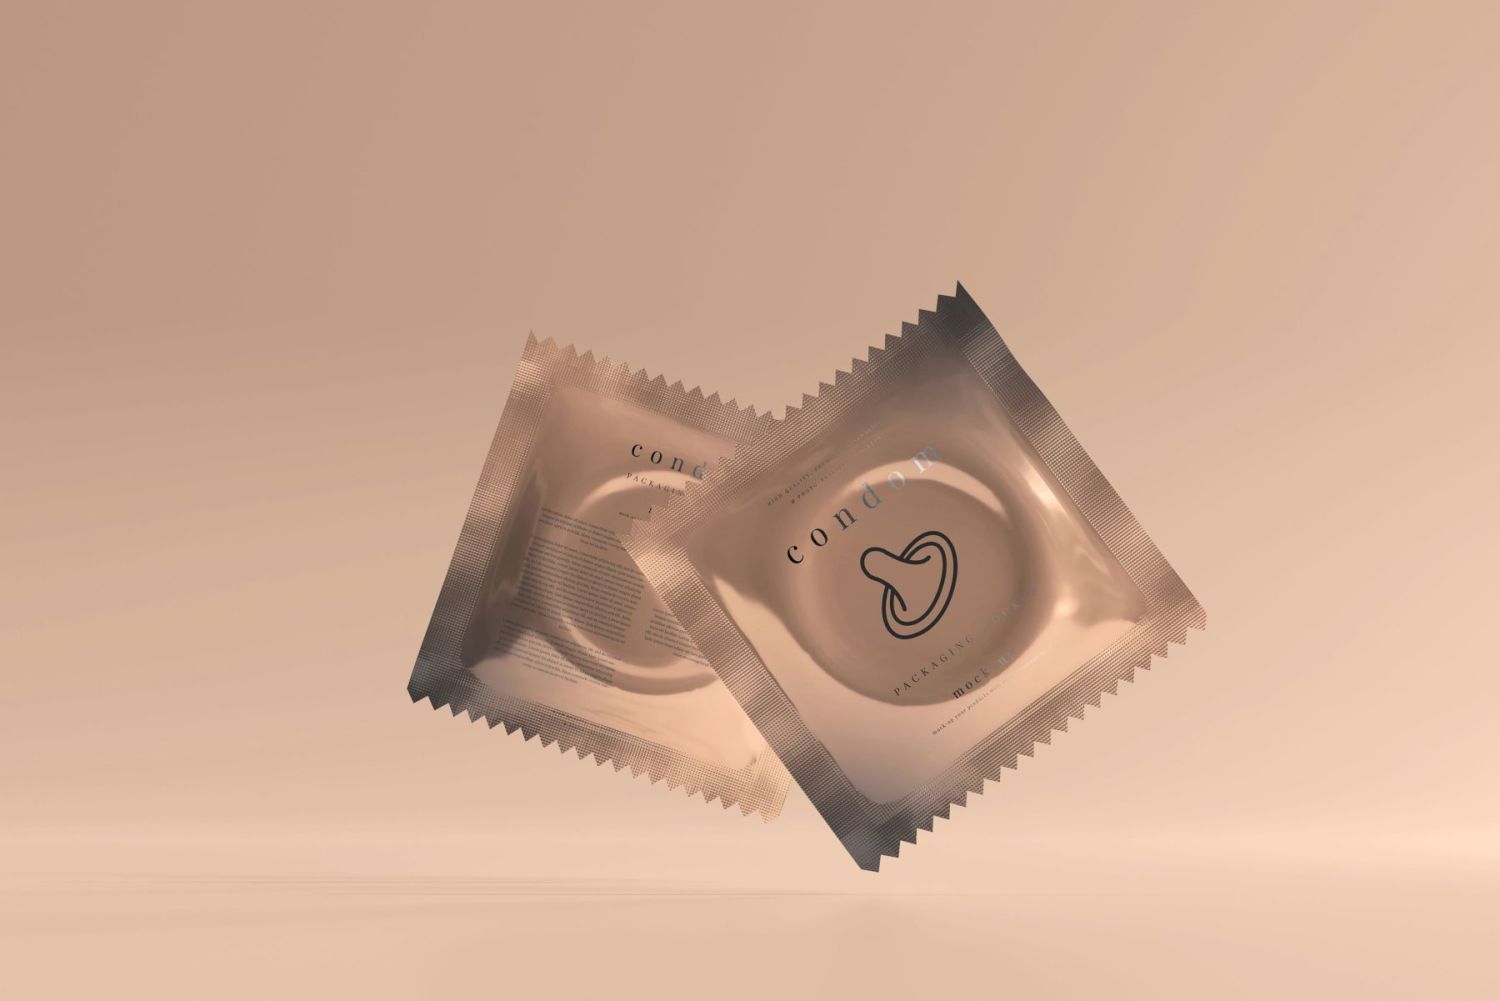 避孕套盒和铝箔包装样机 Condom Packaging Mock-ups插图4